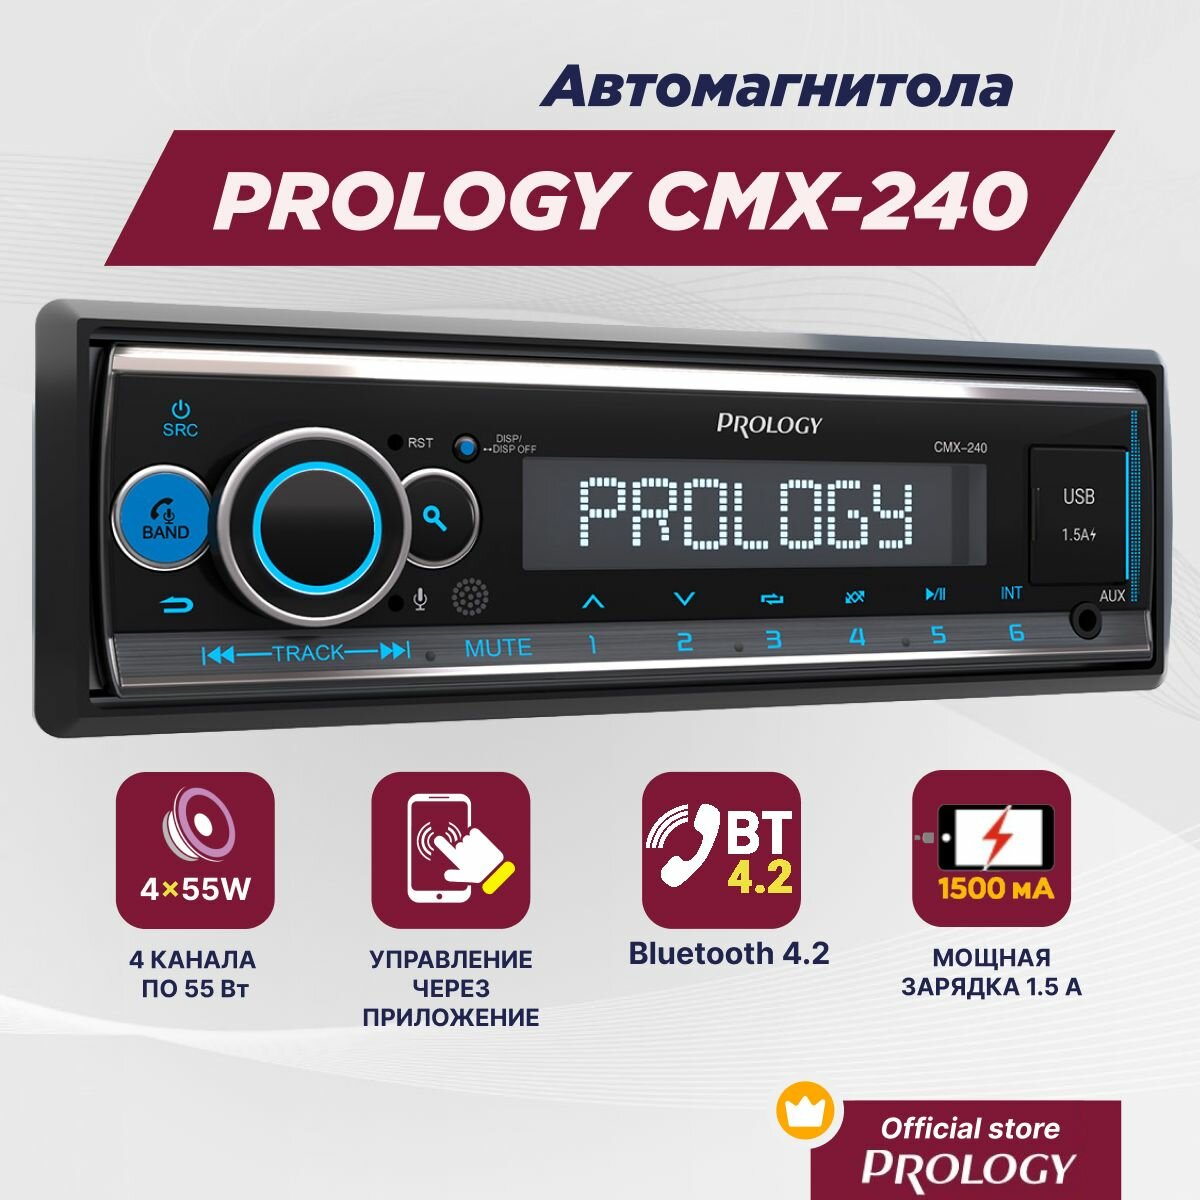 Автомагнитола PROLOGY CMX-240 - 1DIN FM/SD/USB-ресивер с Bluetooth